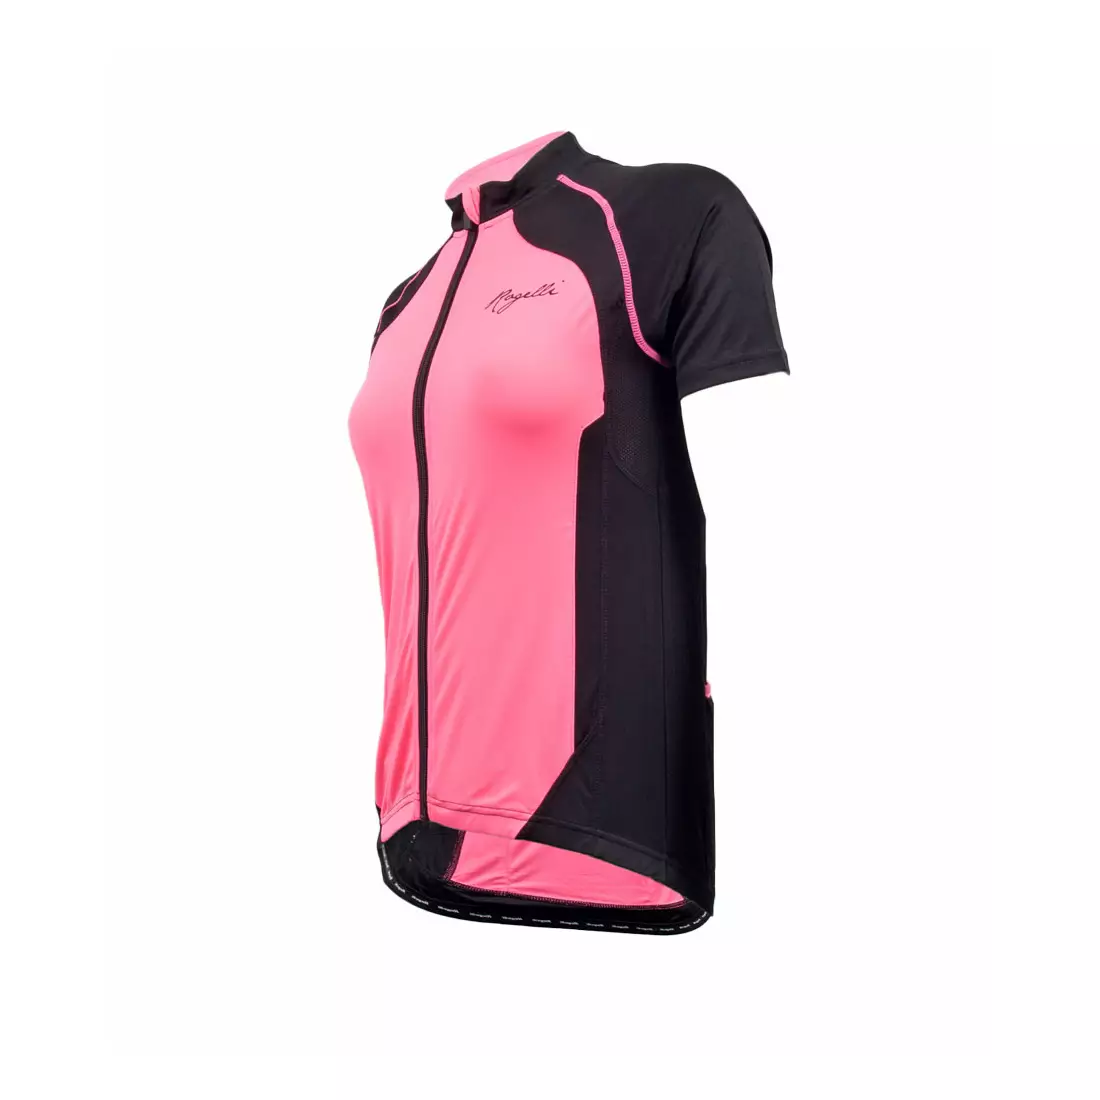 ROGELLI BICE - dámsky cyklistický dres, čierno-ružový